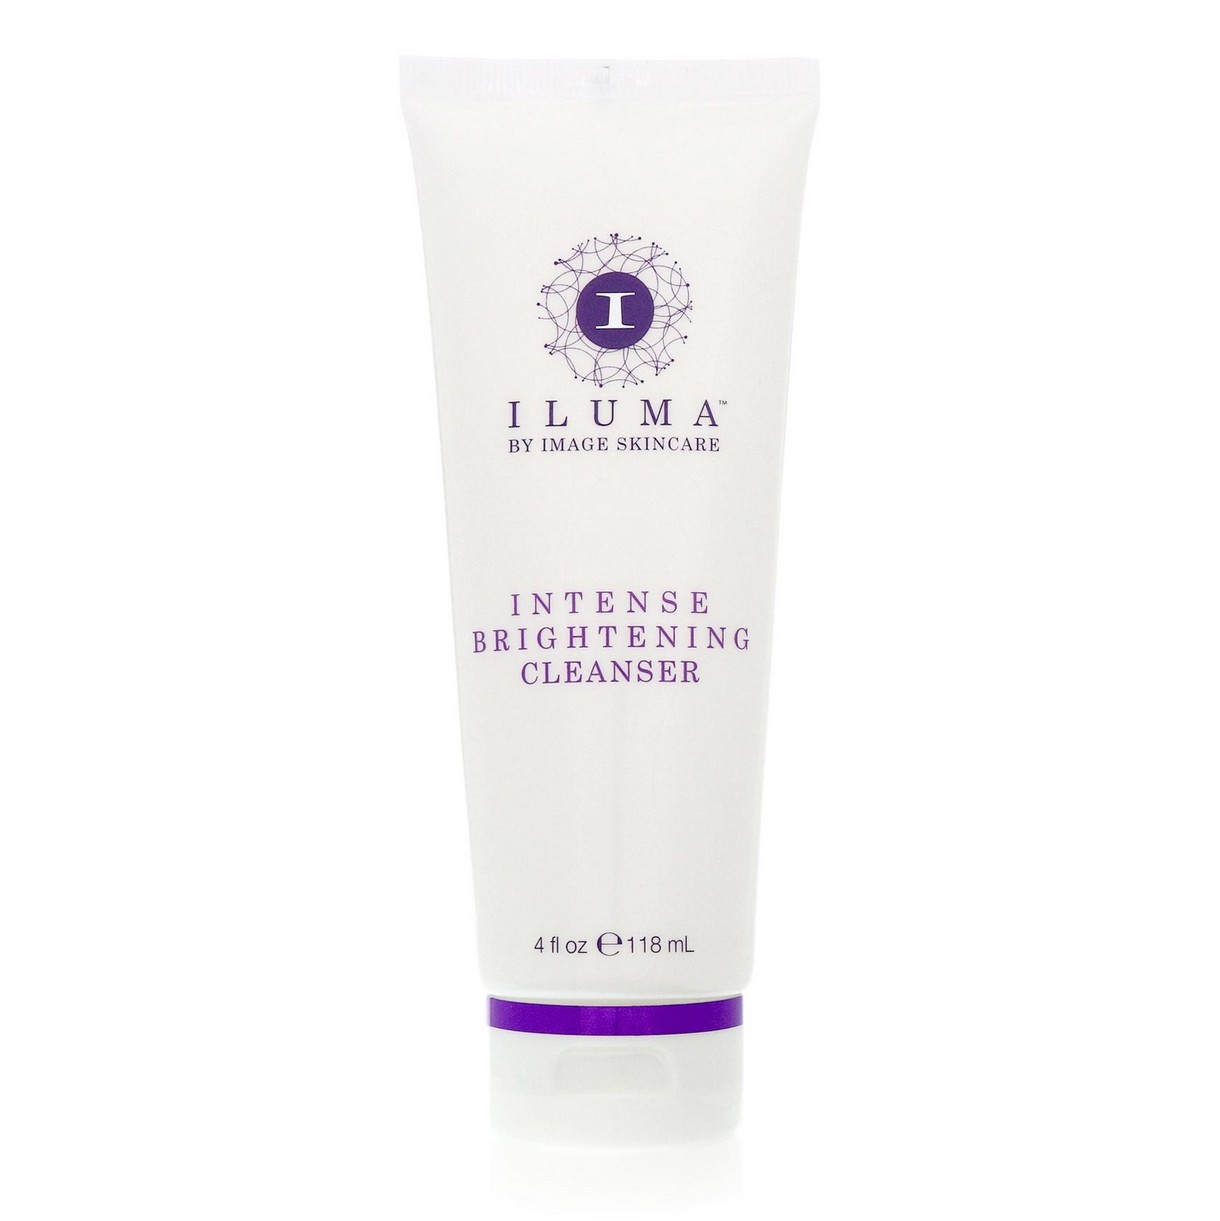 Brightening cleanser. Iluma крем для лица. Image Skincare товары. Iluma™ intense Brightening Exfoliating Cleanser. Iluma имидж.